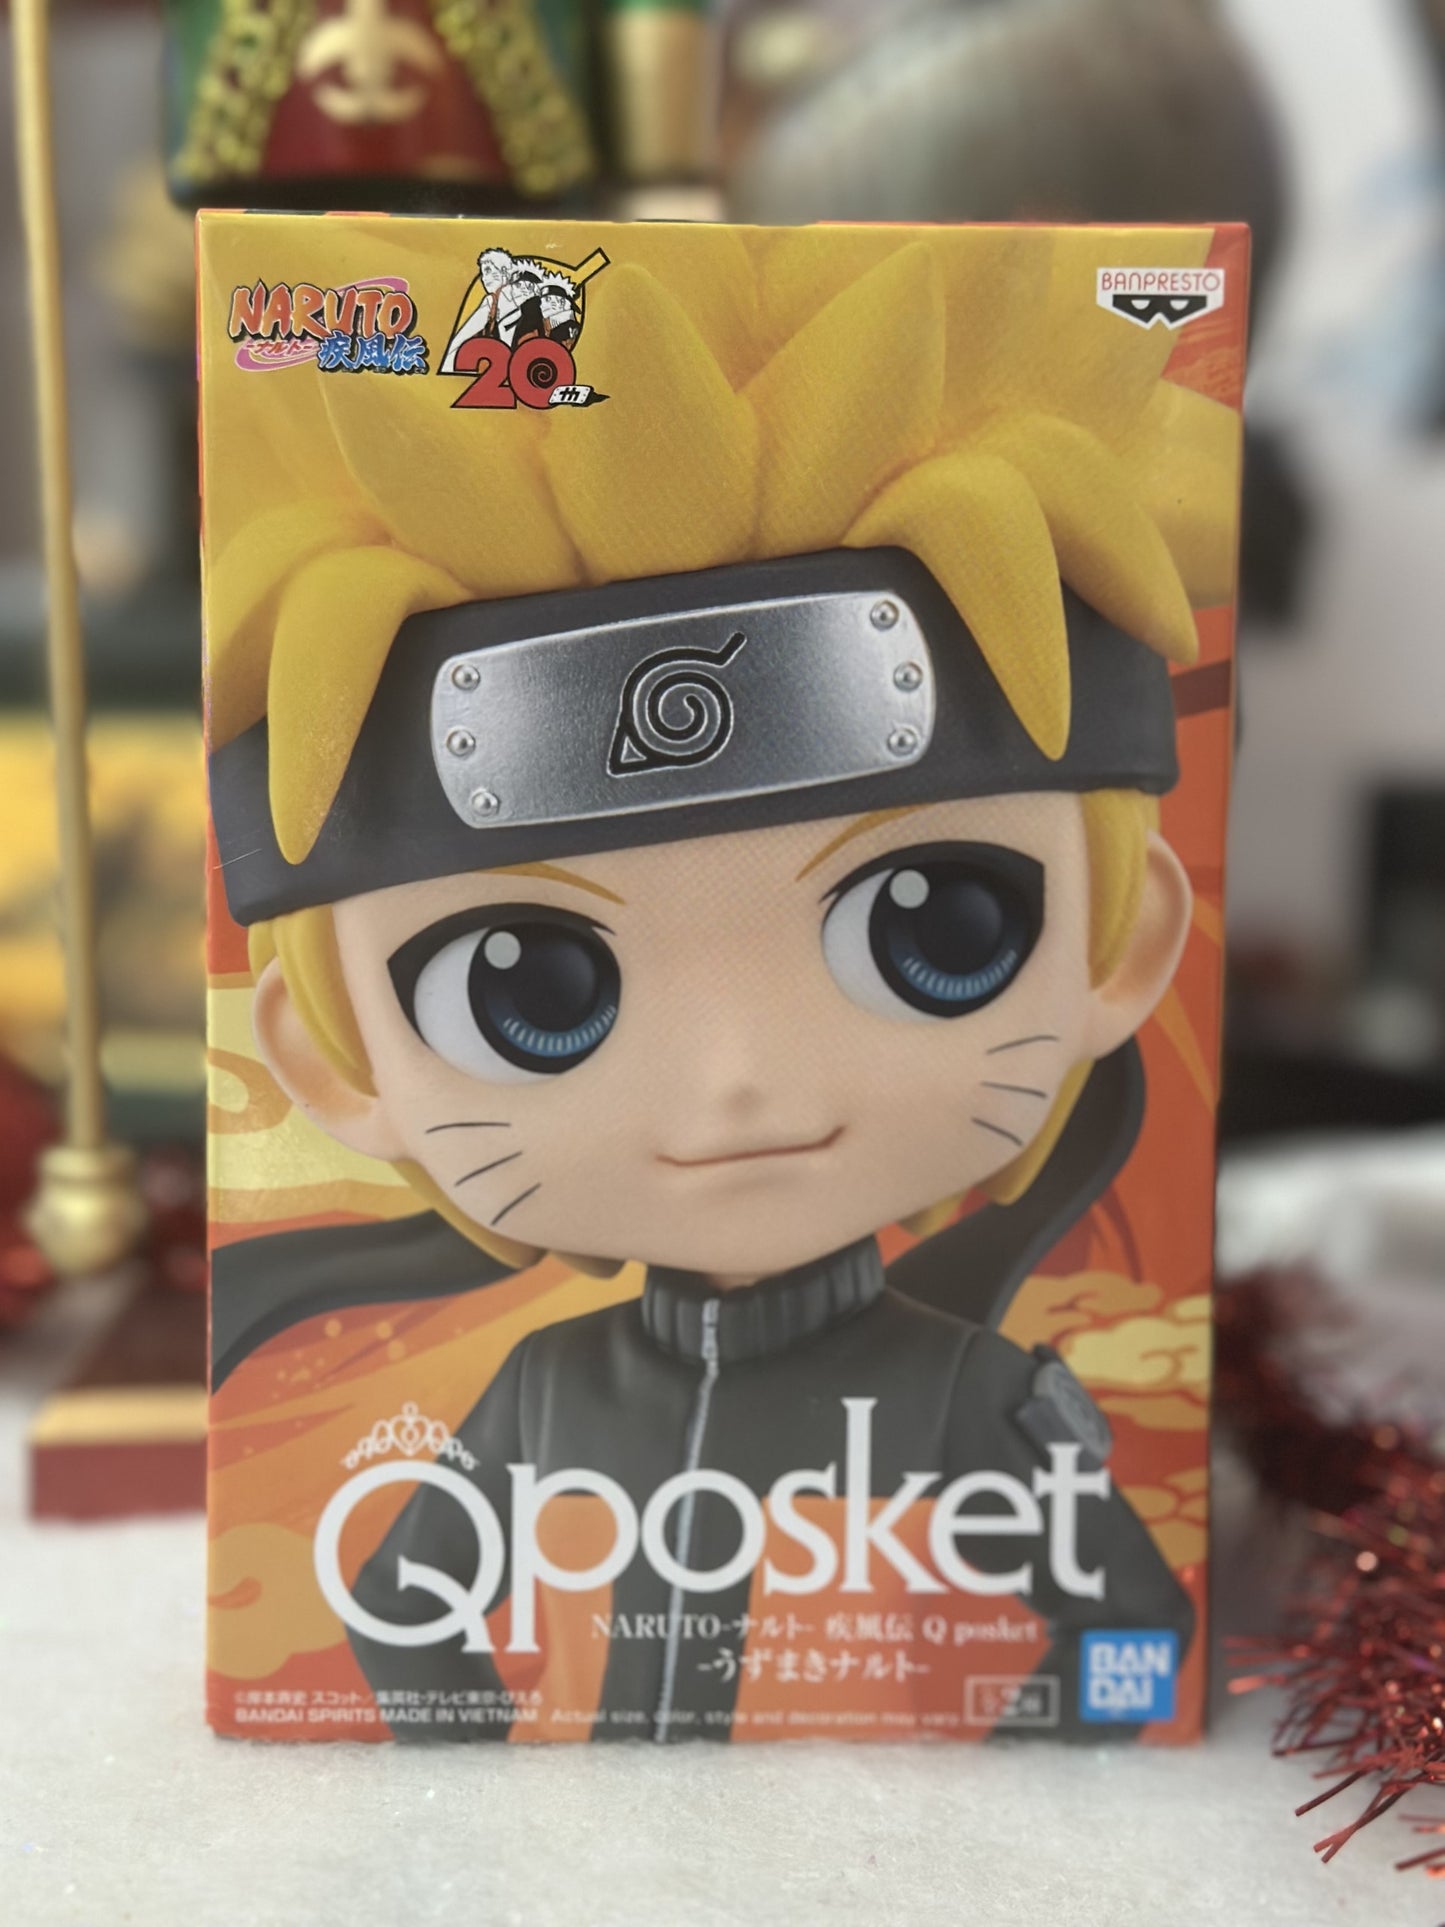 Naruto Shippuden - Figurine Naruto Uzumaki - Q Posket